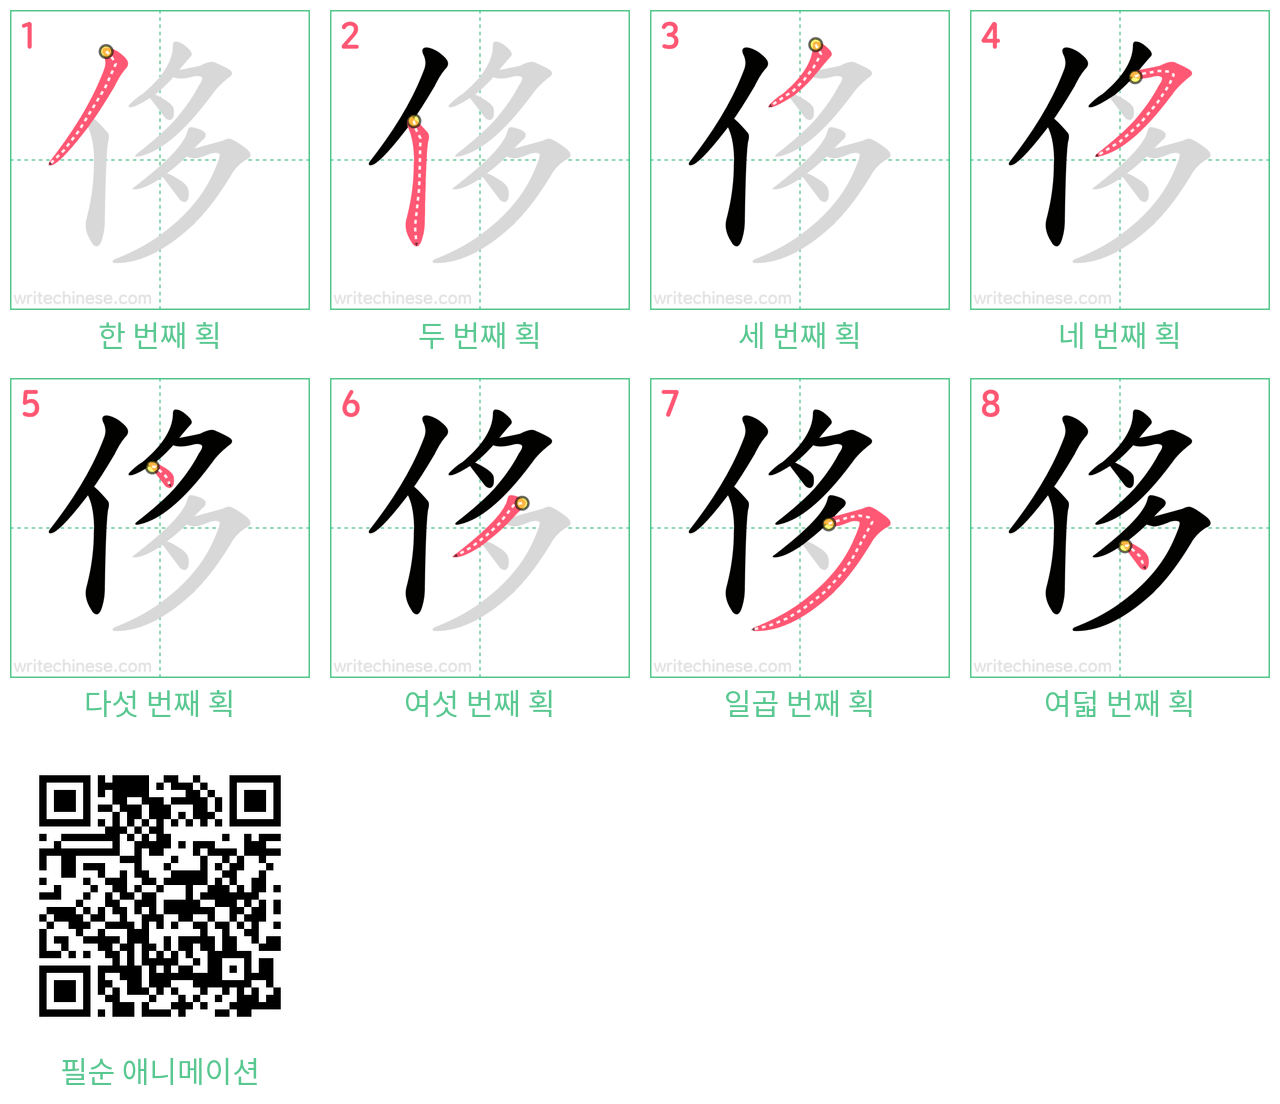 侈 step-by-step stroke order diagrams